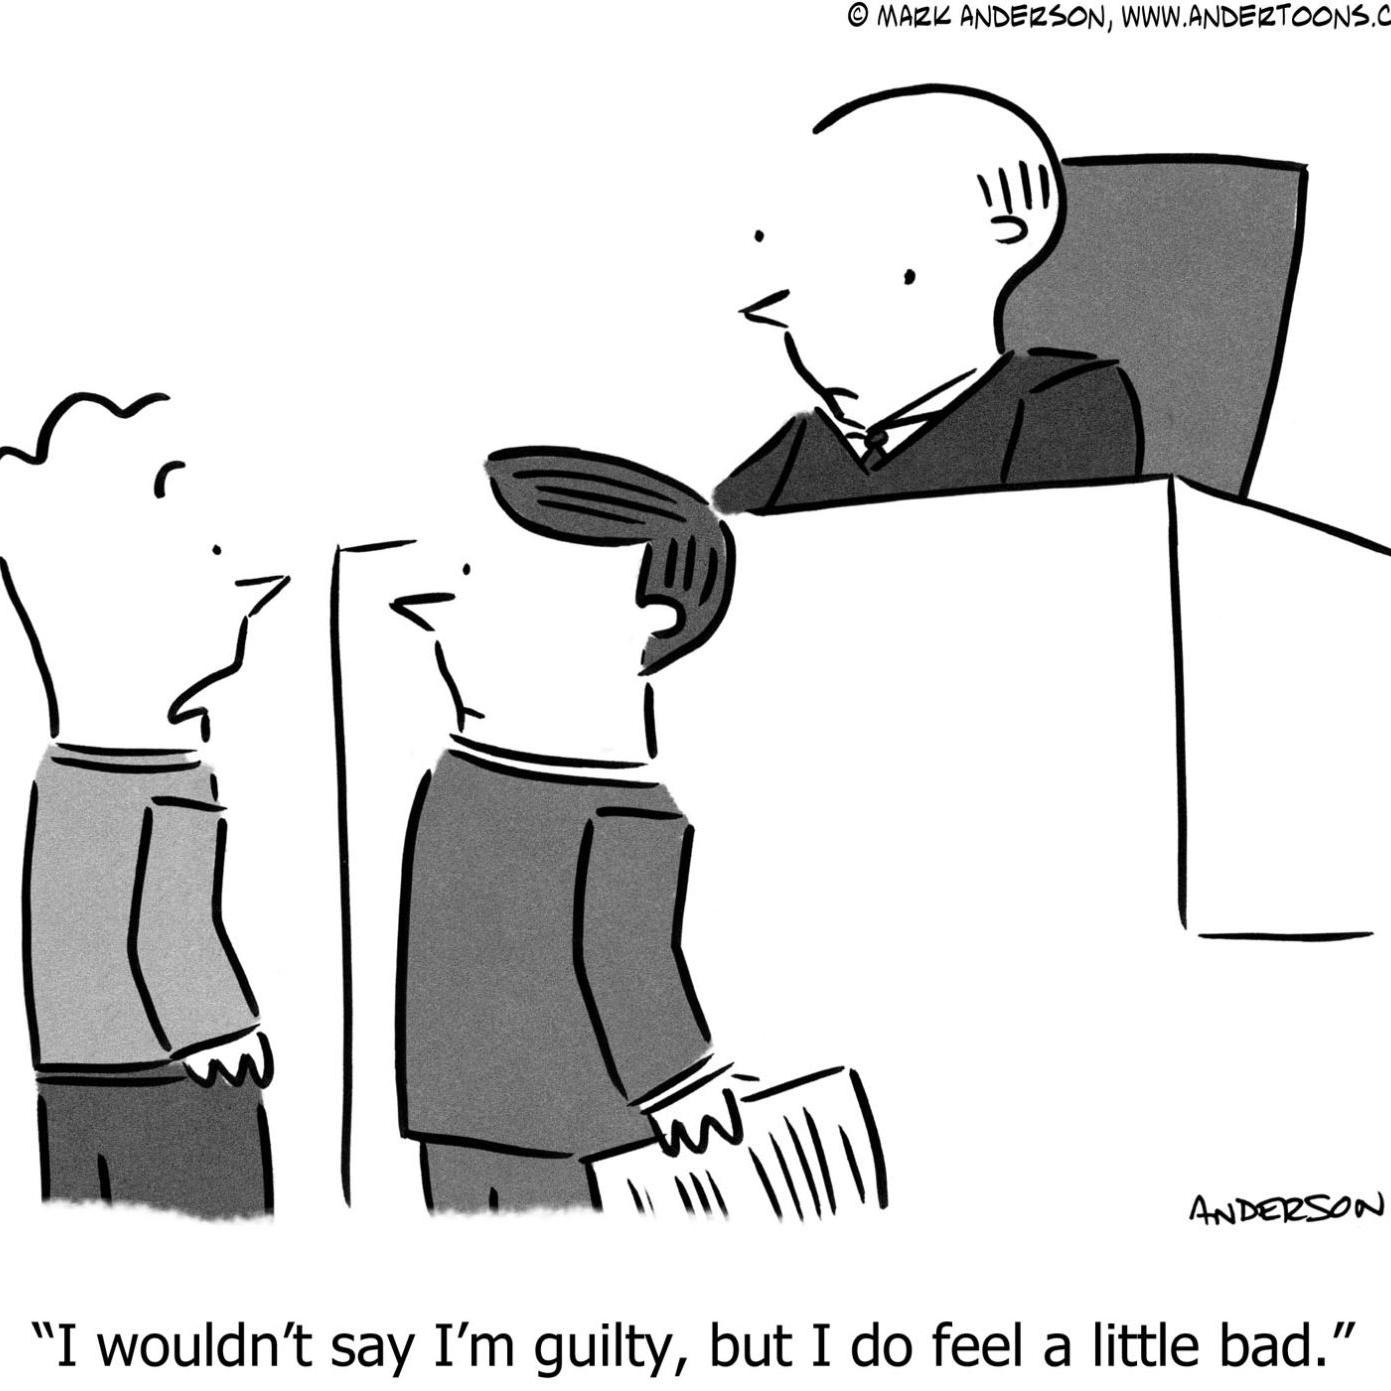 Legal Cartoon Not Exactly A Guilty Plea Tulsaworld Com